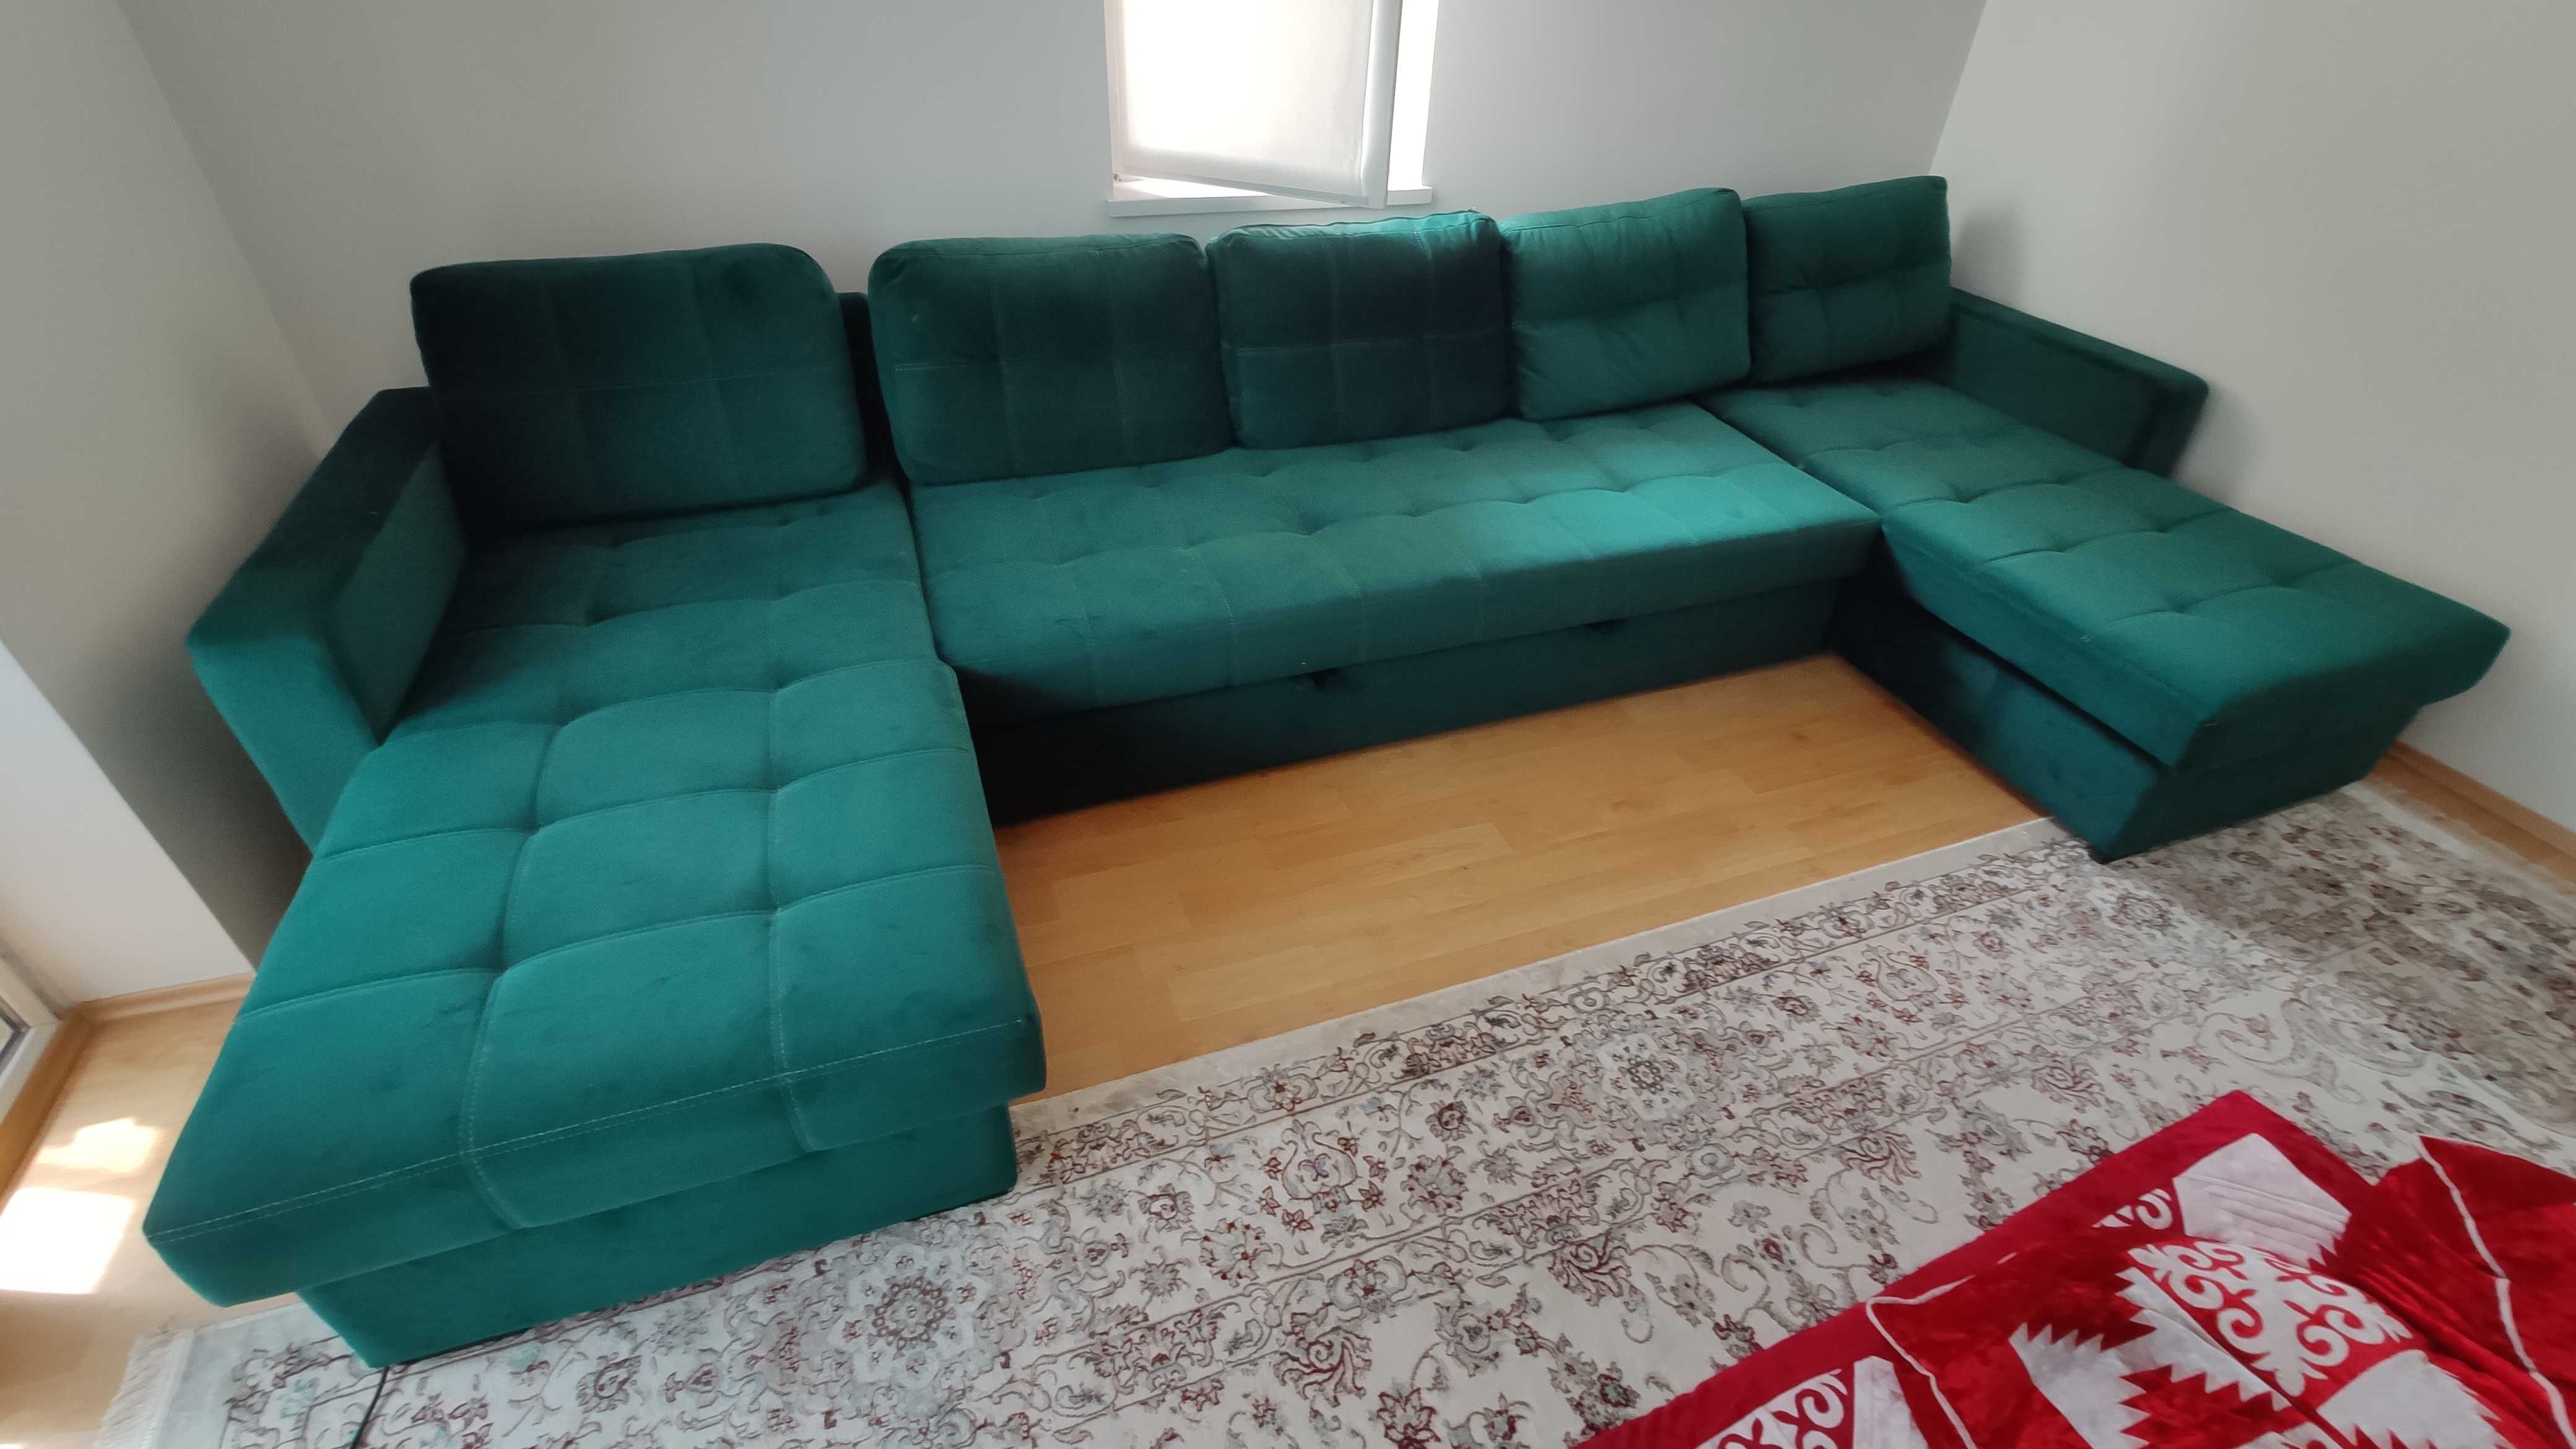 Продаю диван в хорошем состоянии